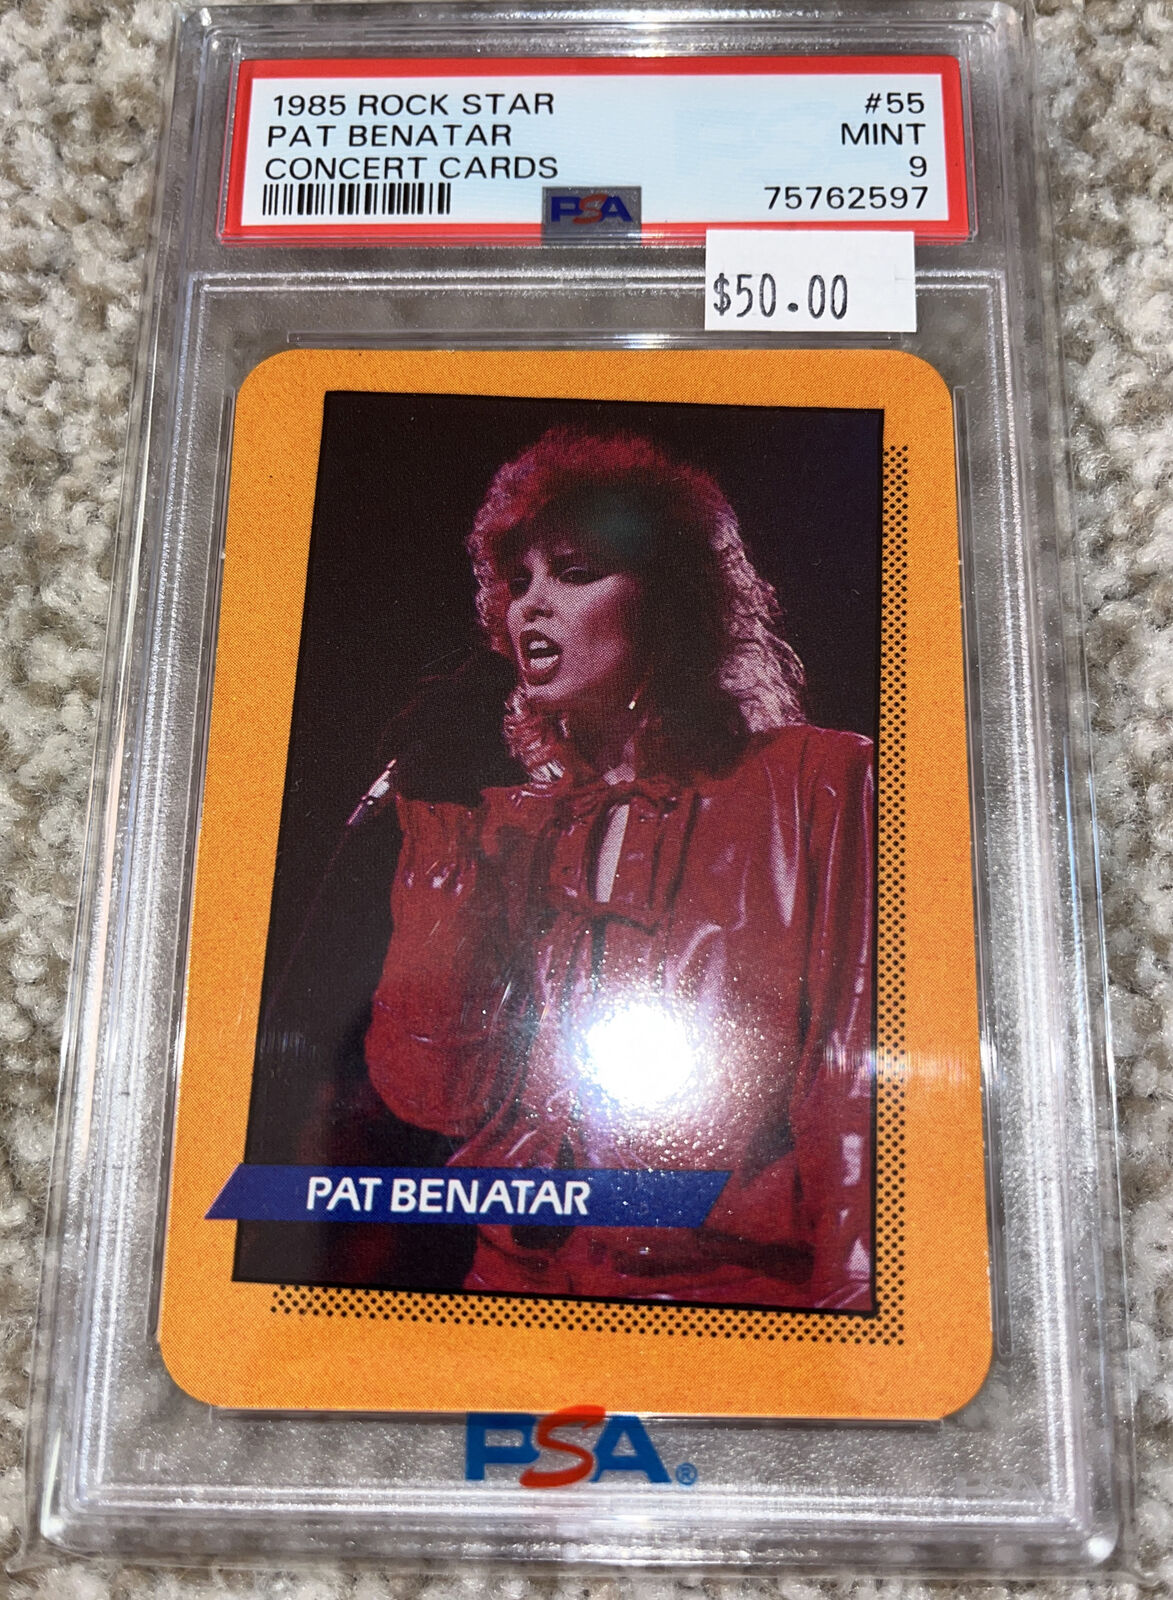 1985 Rock Star PAT BENATAR Concert Cards #55 PSA 9 MINT